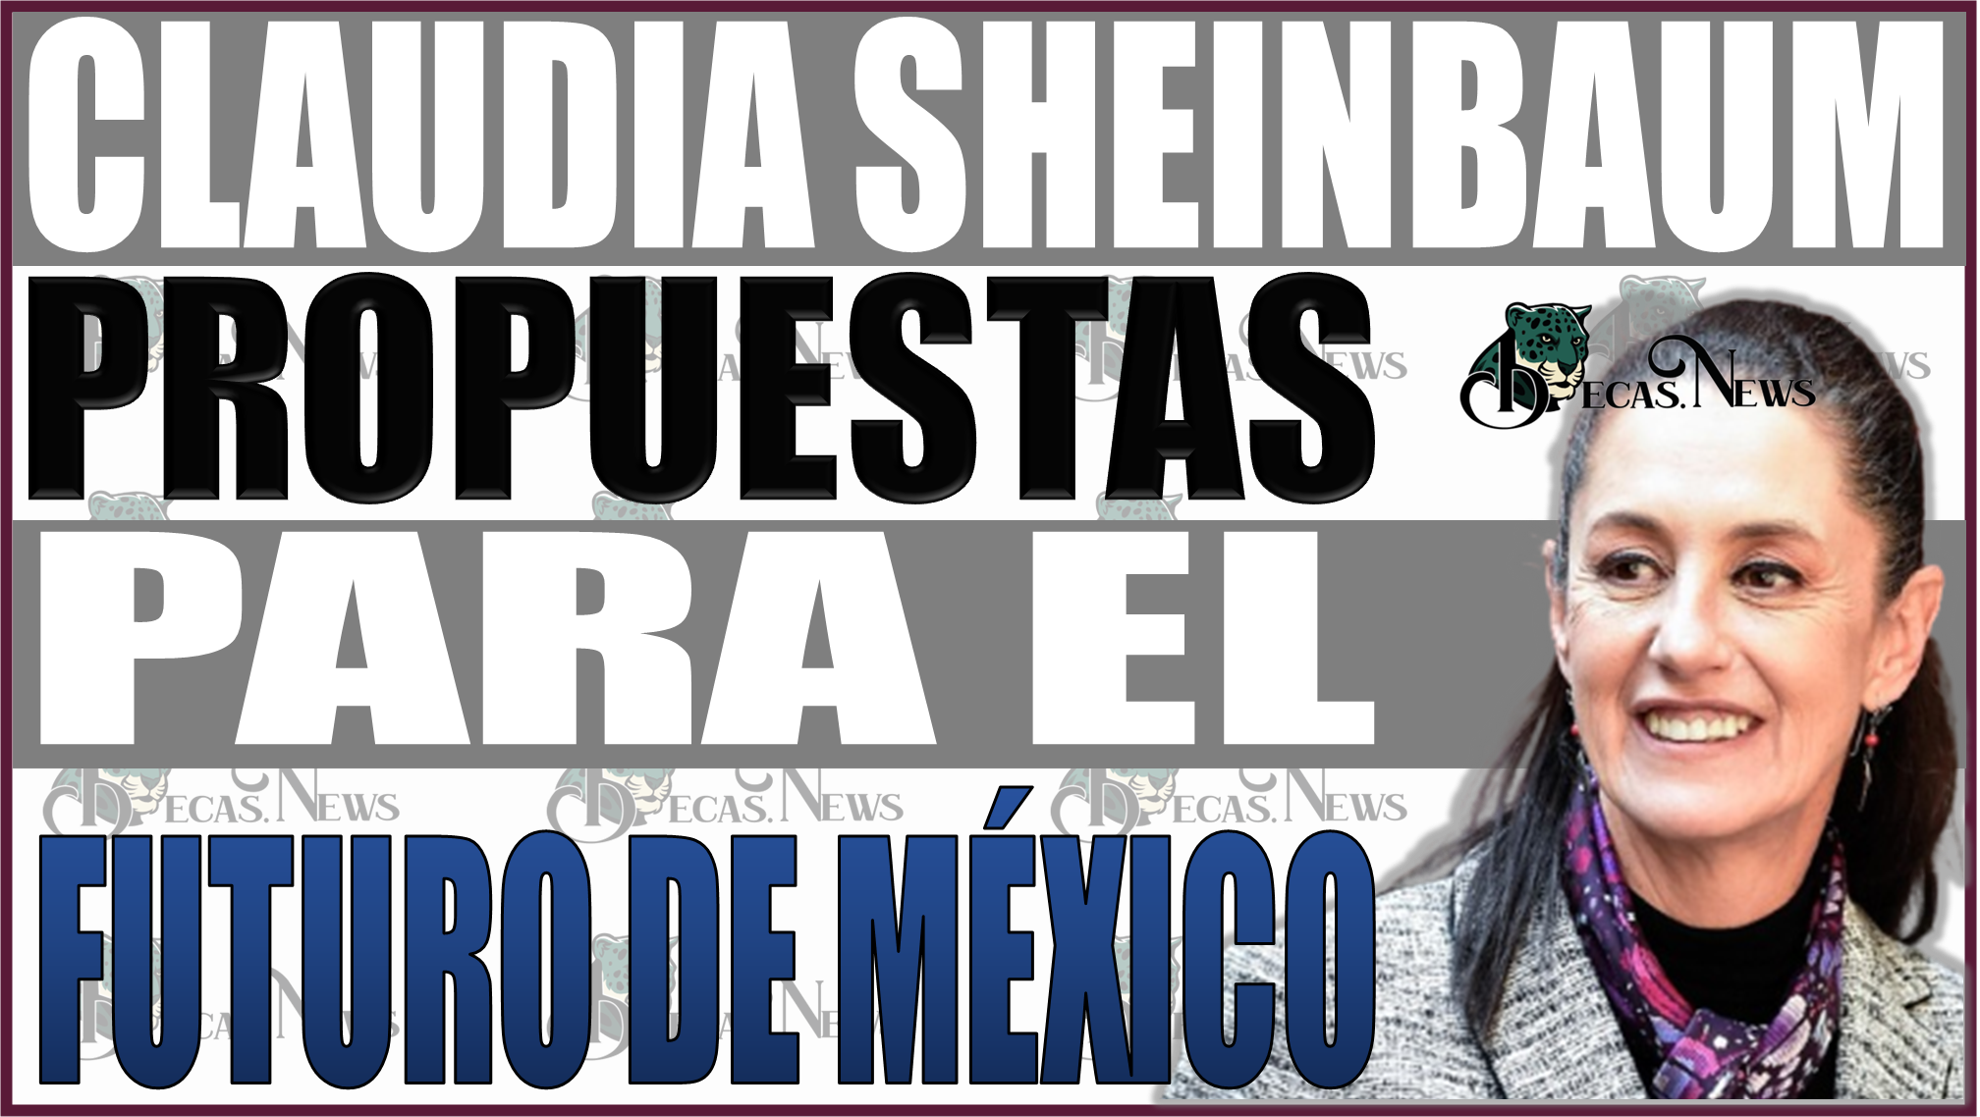 ¡Descubre el Futuro de México! Las Audaces Propuestas de Claudia Sheinbaum, Líder de la Coalición Sigamos Haciendo Historia